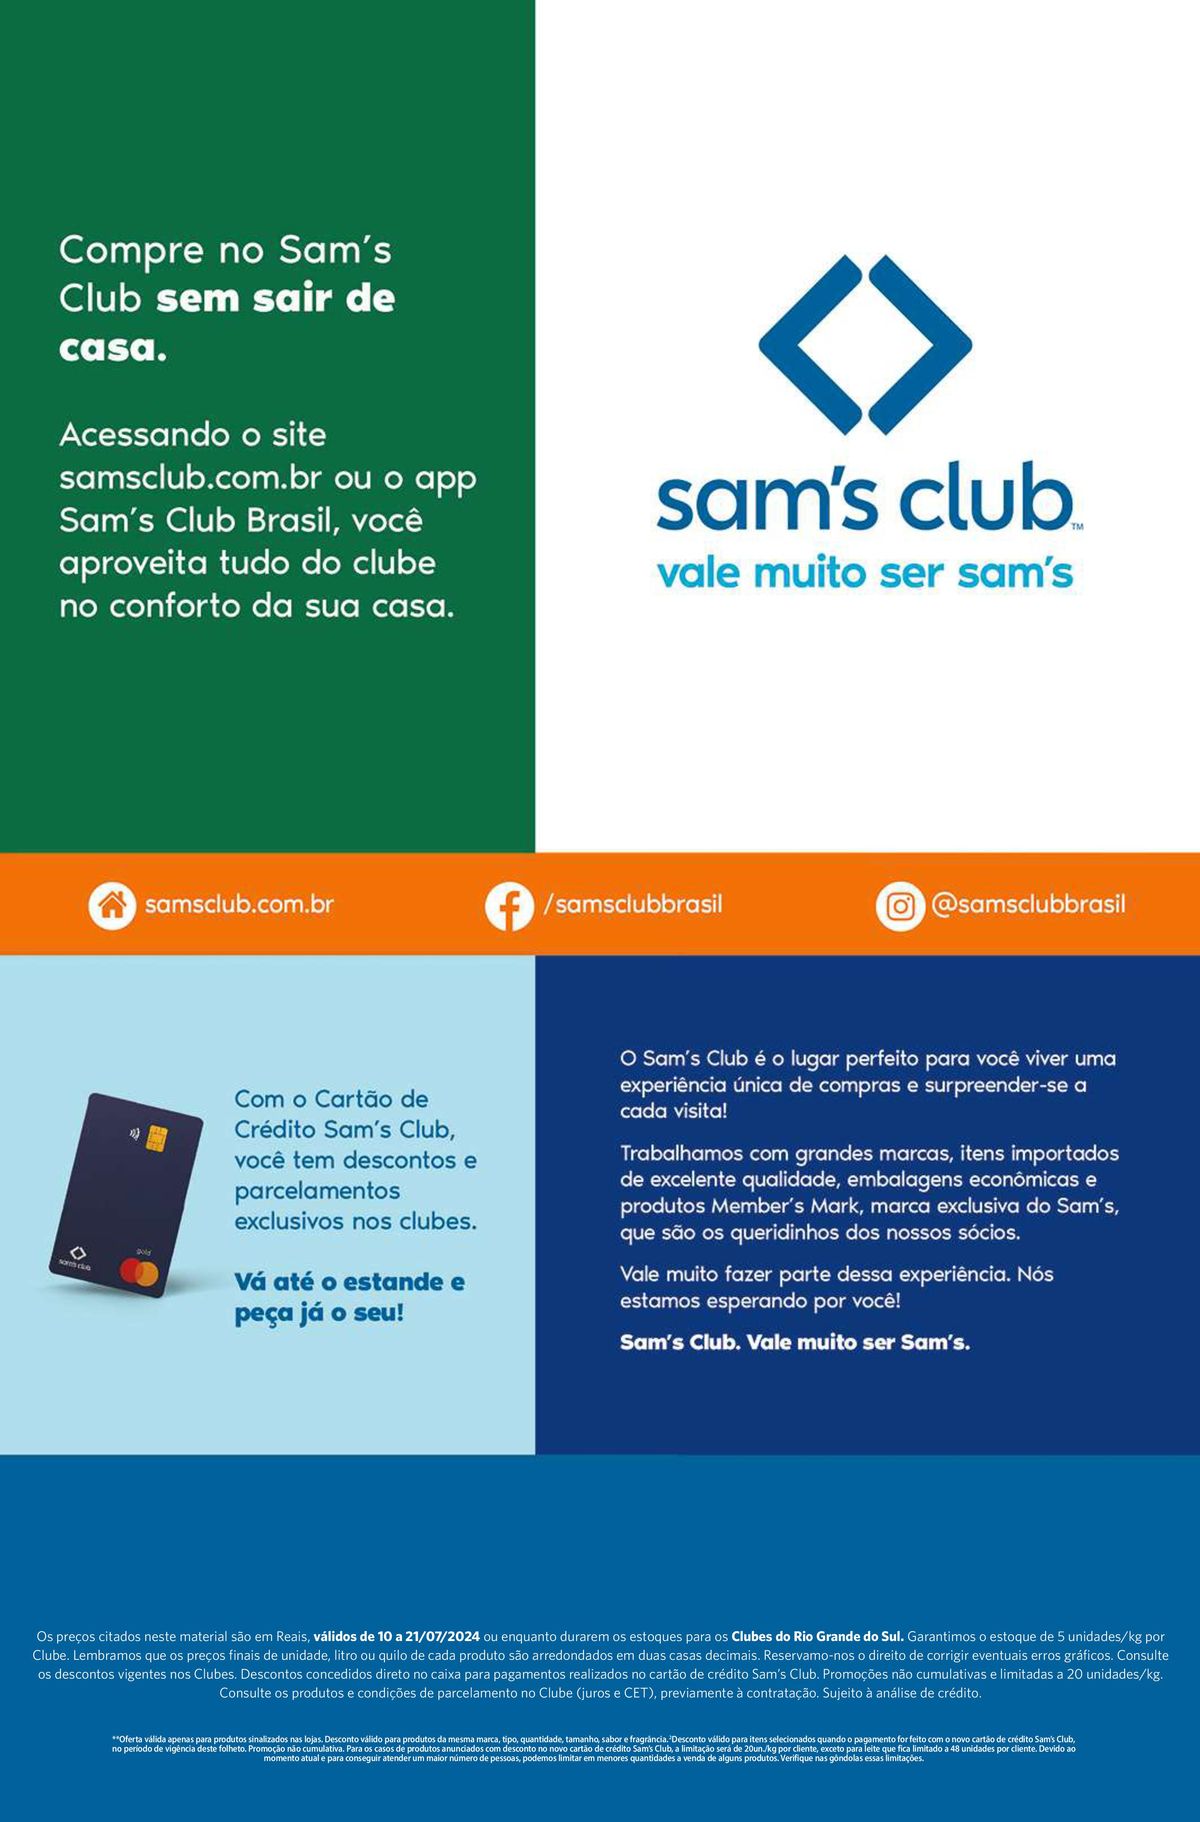 Descontos exclusivos com o Cartão de Crédito Sam's Club